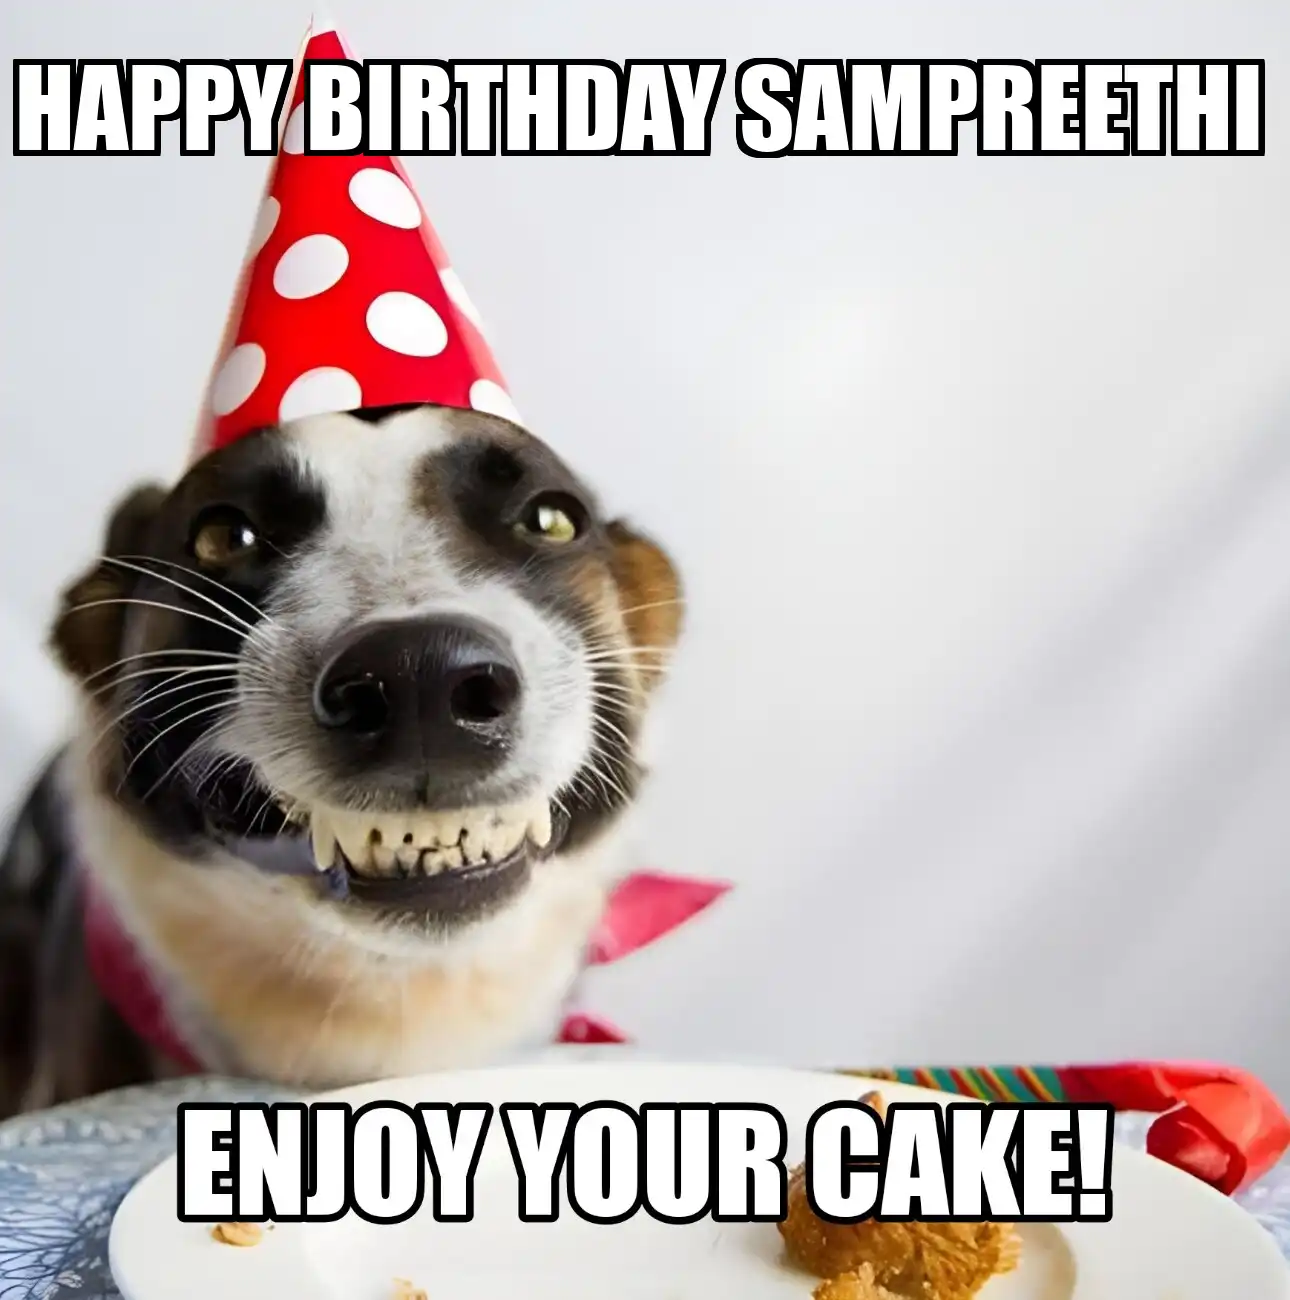 Happy Birthday Sampreethi Enjoy Your Cake Dog Meme